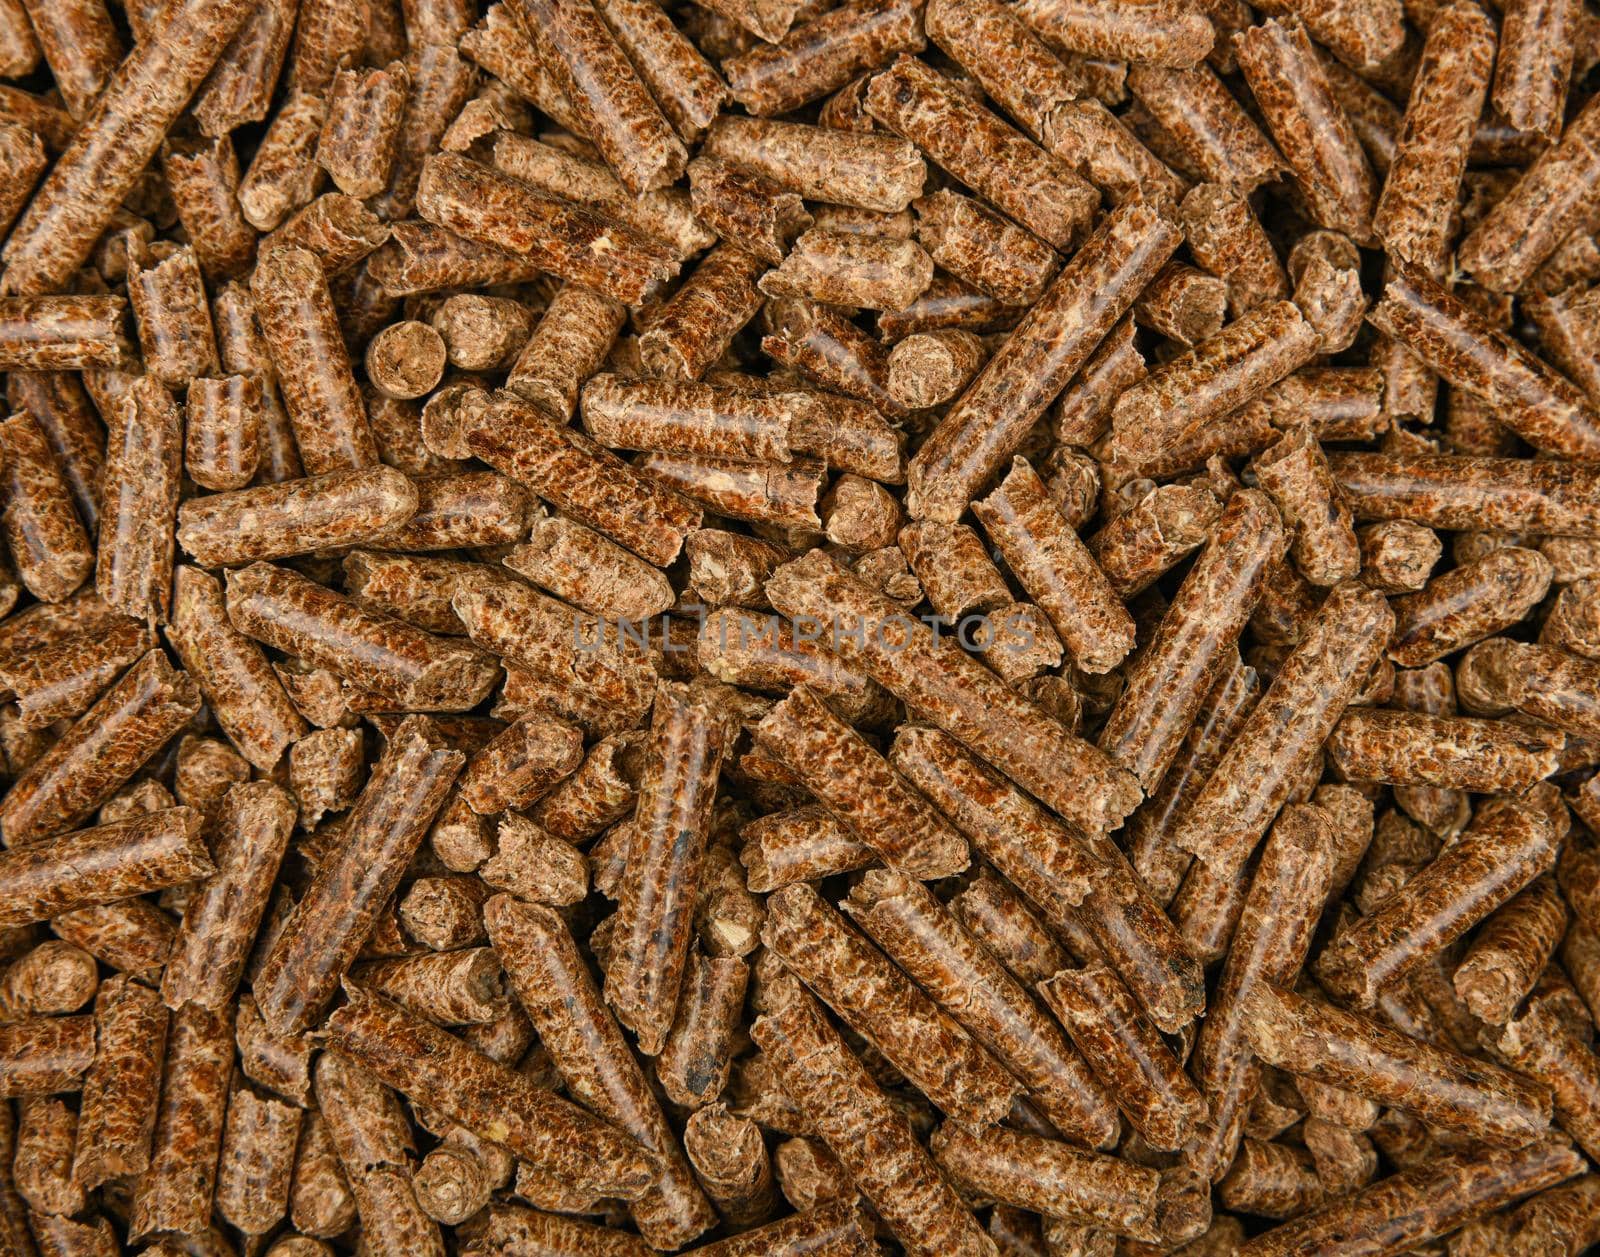 Hardwood pellets for food smoking by BreakingTheWalls